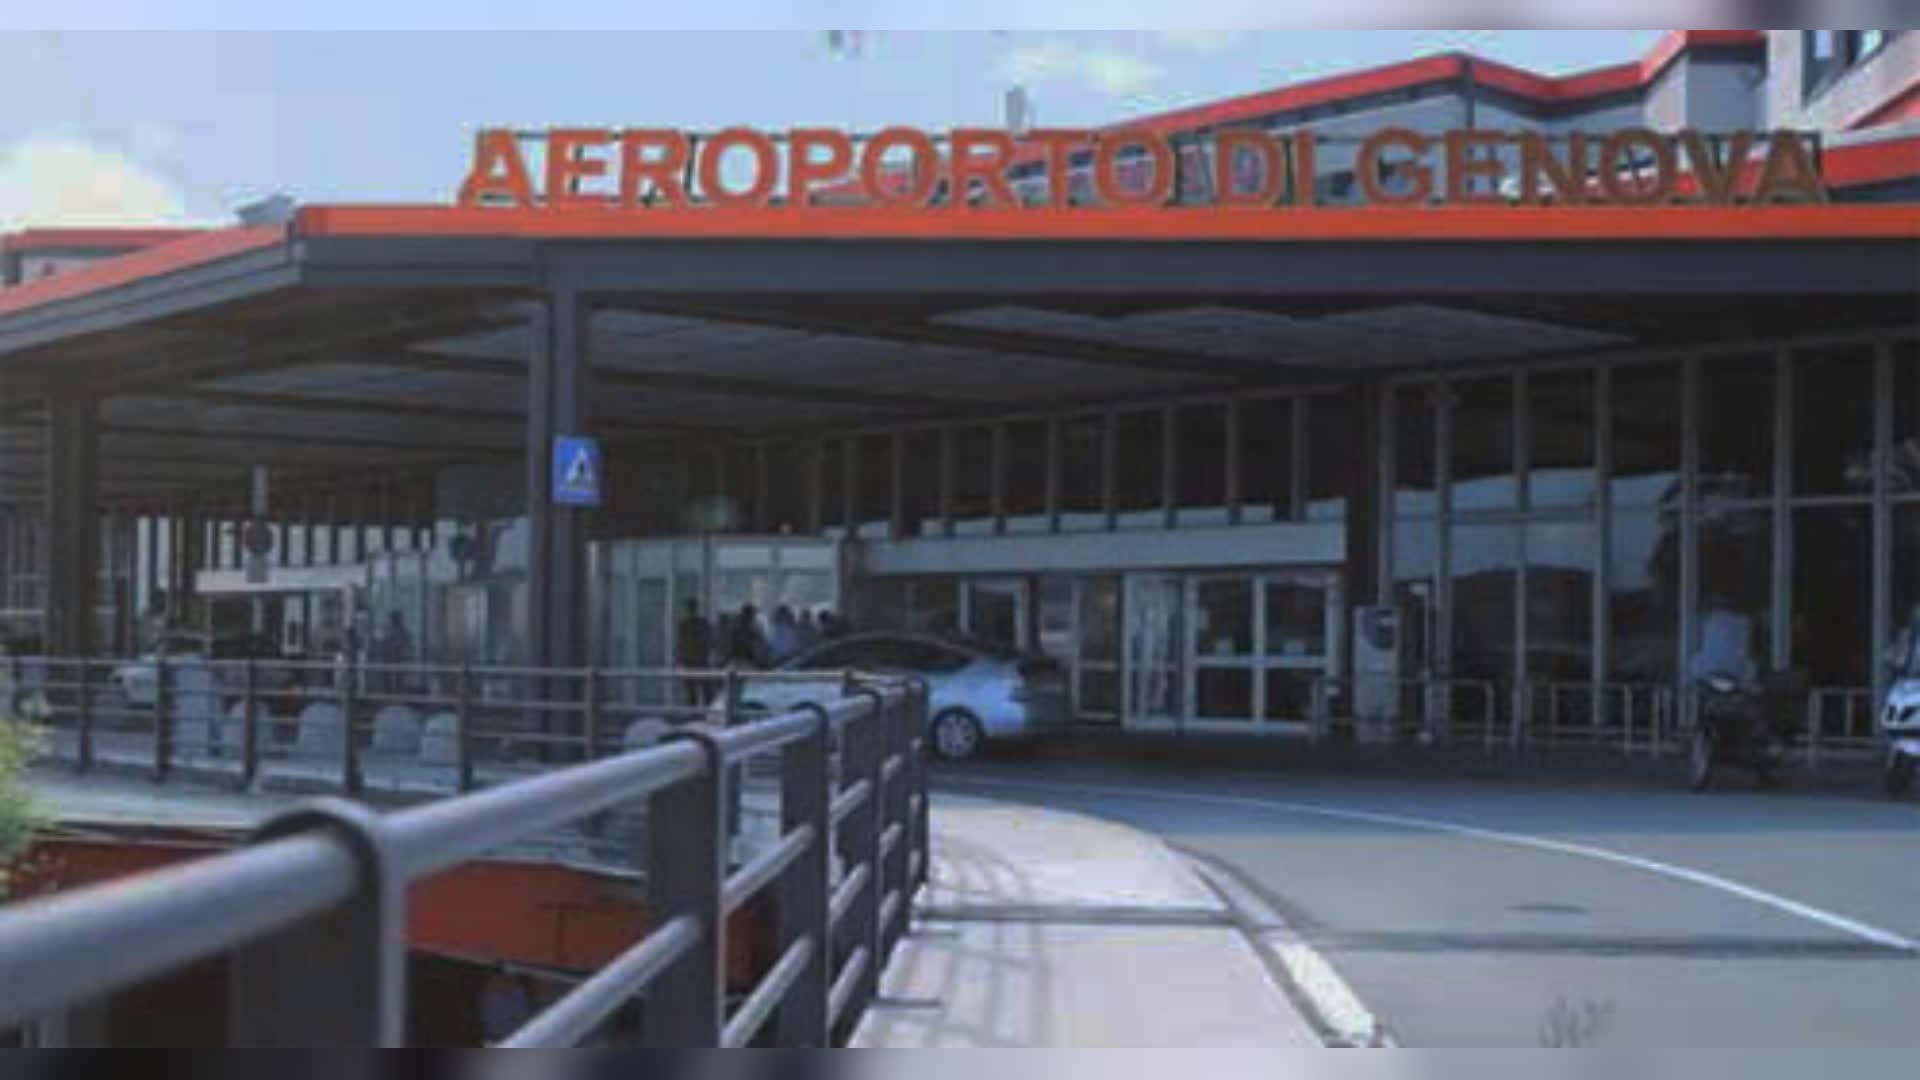 Aeroporto di Genova, Toti sul nuovo presidente Lavarello: "Ha tutte le qualità per guidare uno scalo in continua crescita"